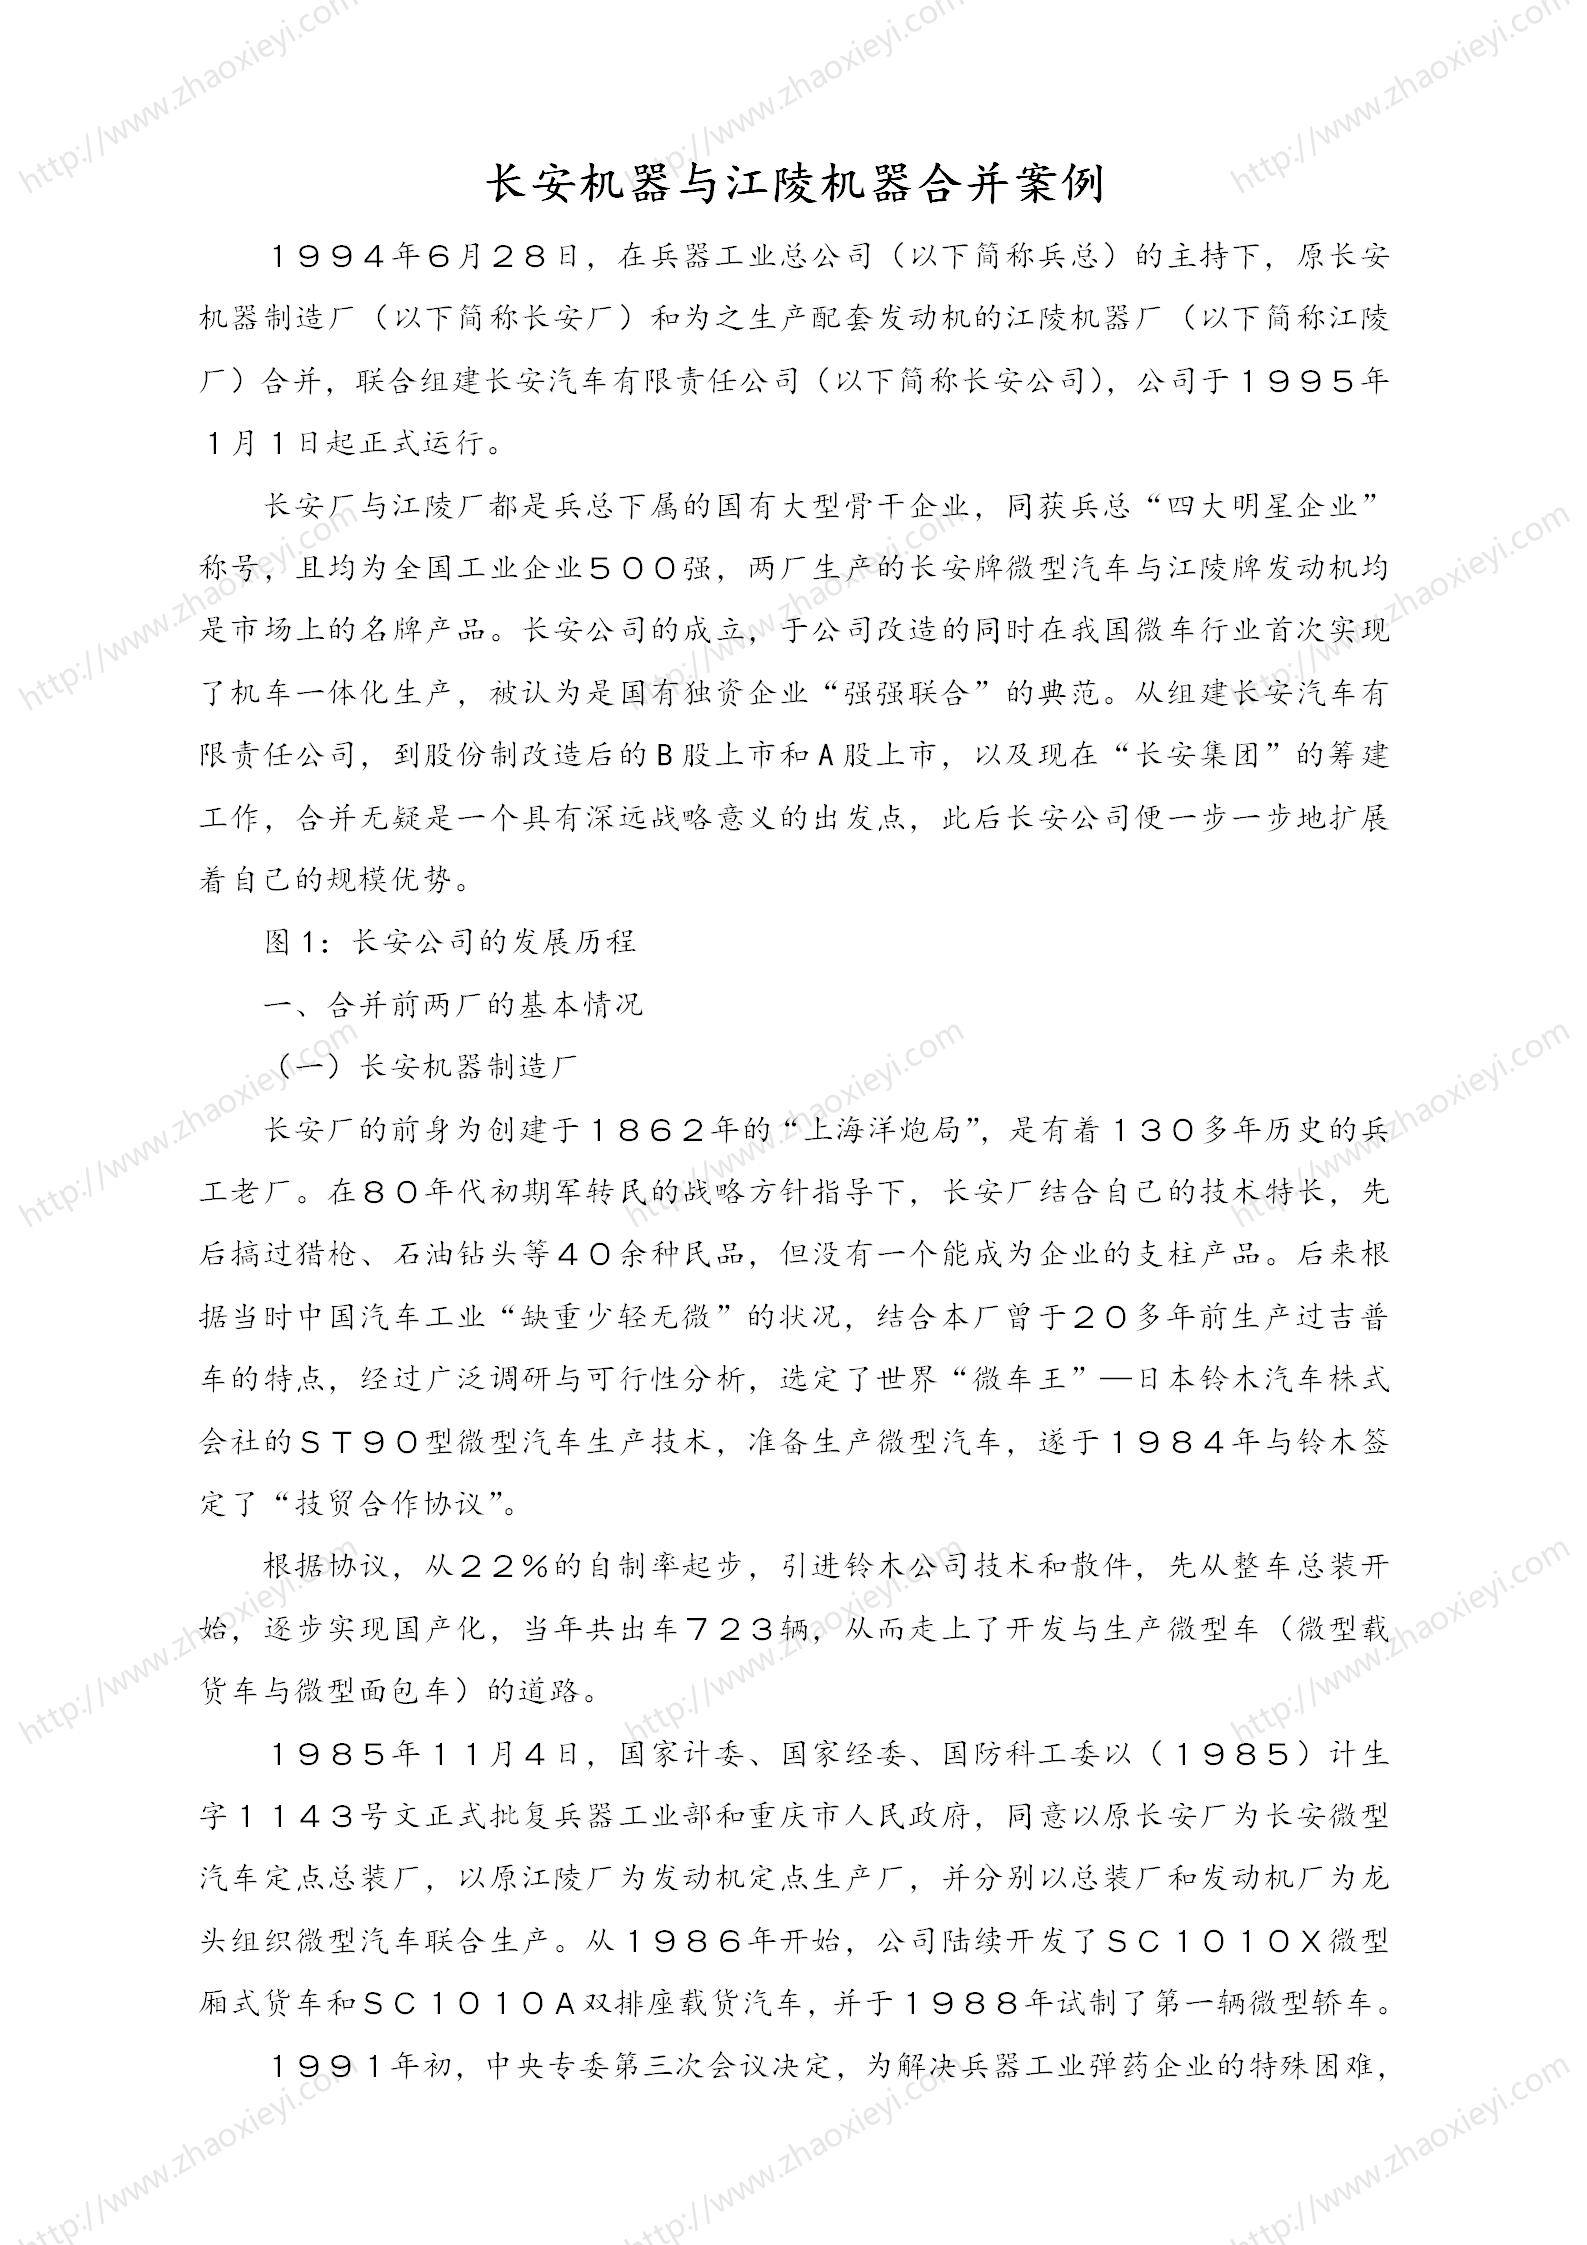 中国企业并购经典案例_142.jpg